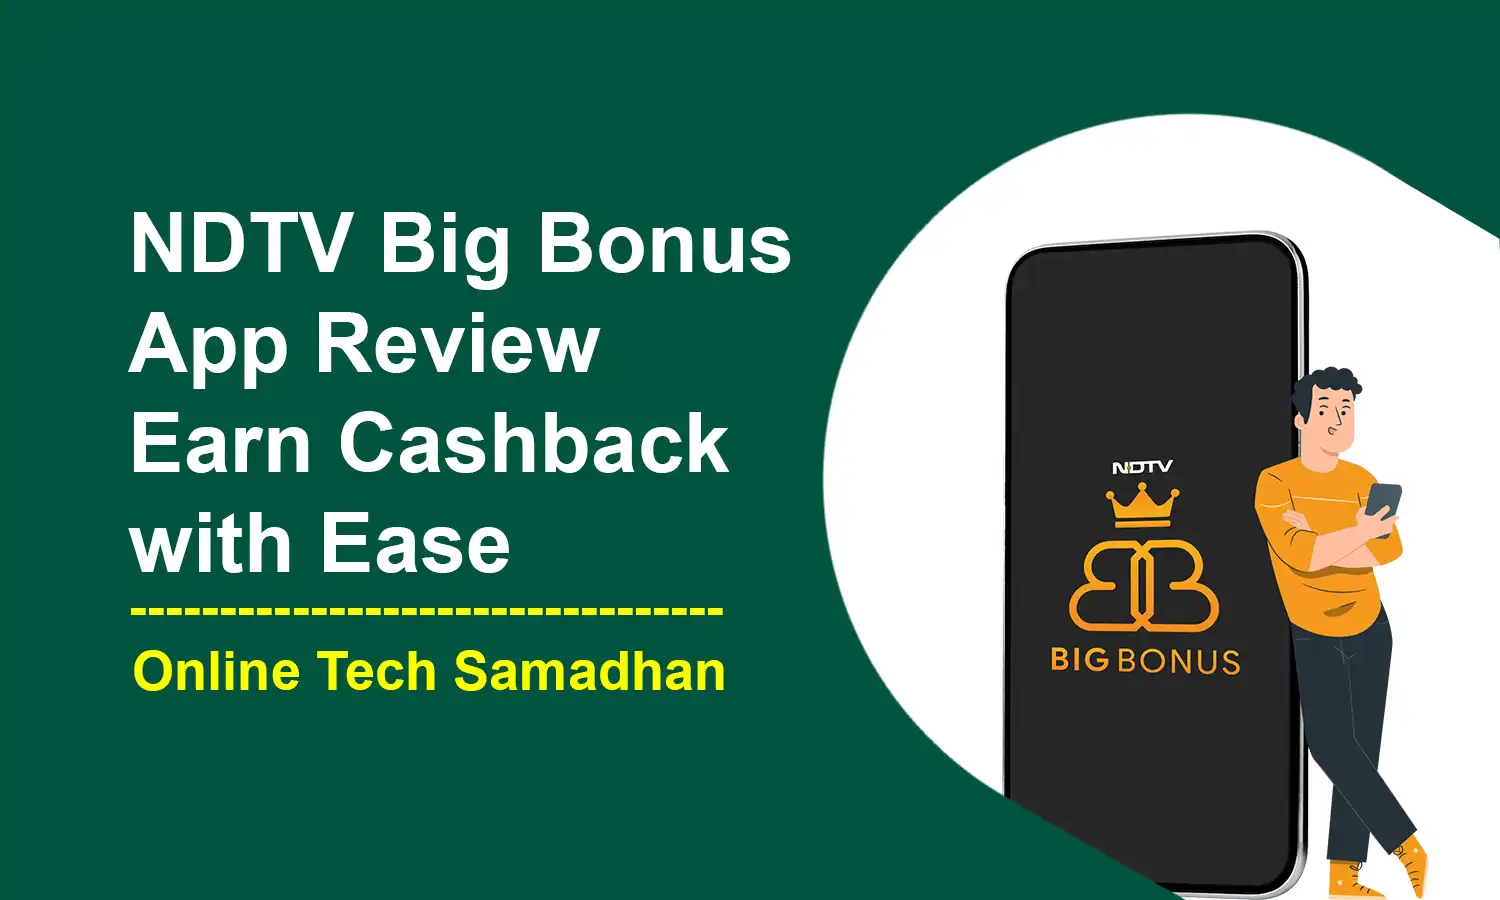 NDTV Big Bonus App Review